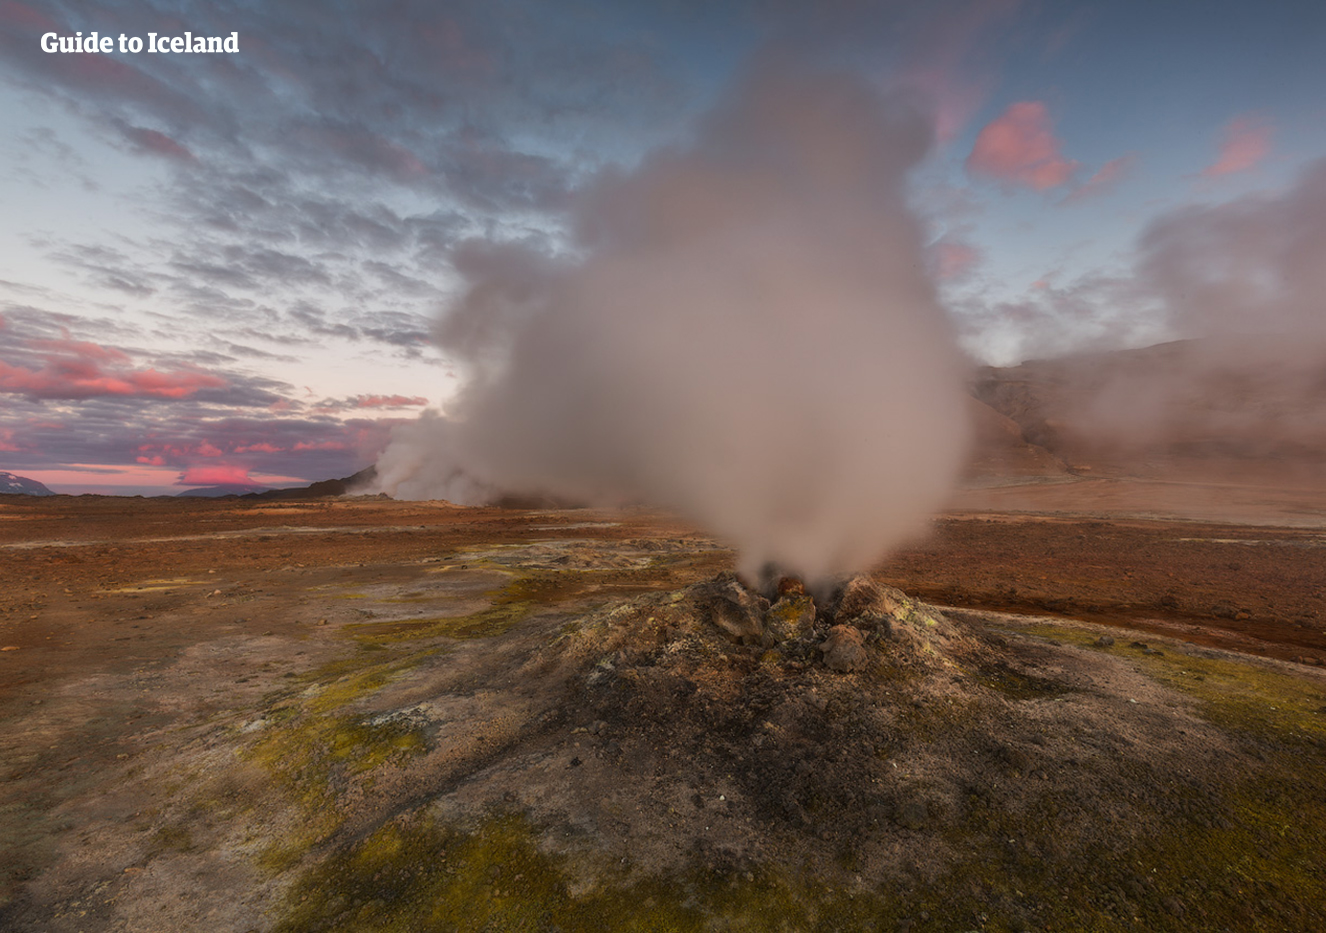 Para wydobywająca się z ziemi w obszarze geotermalnym Námaskarð w pobliżu jeziora Mývatn.